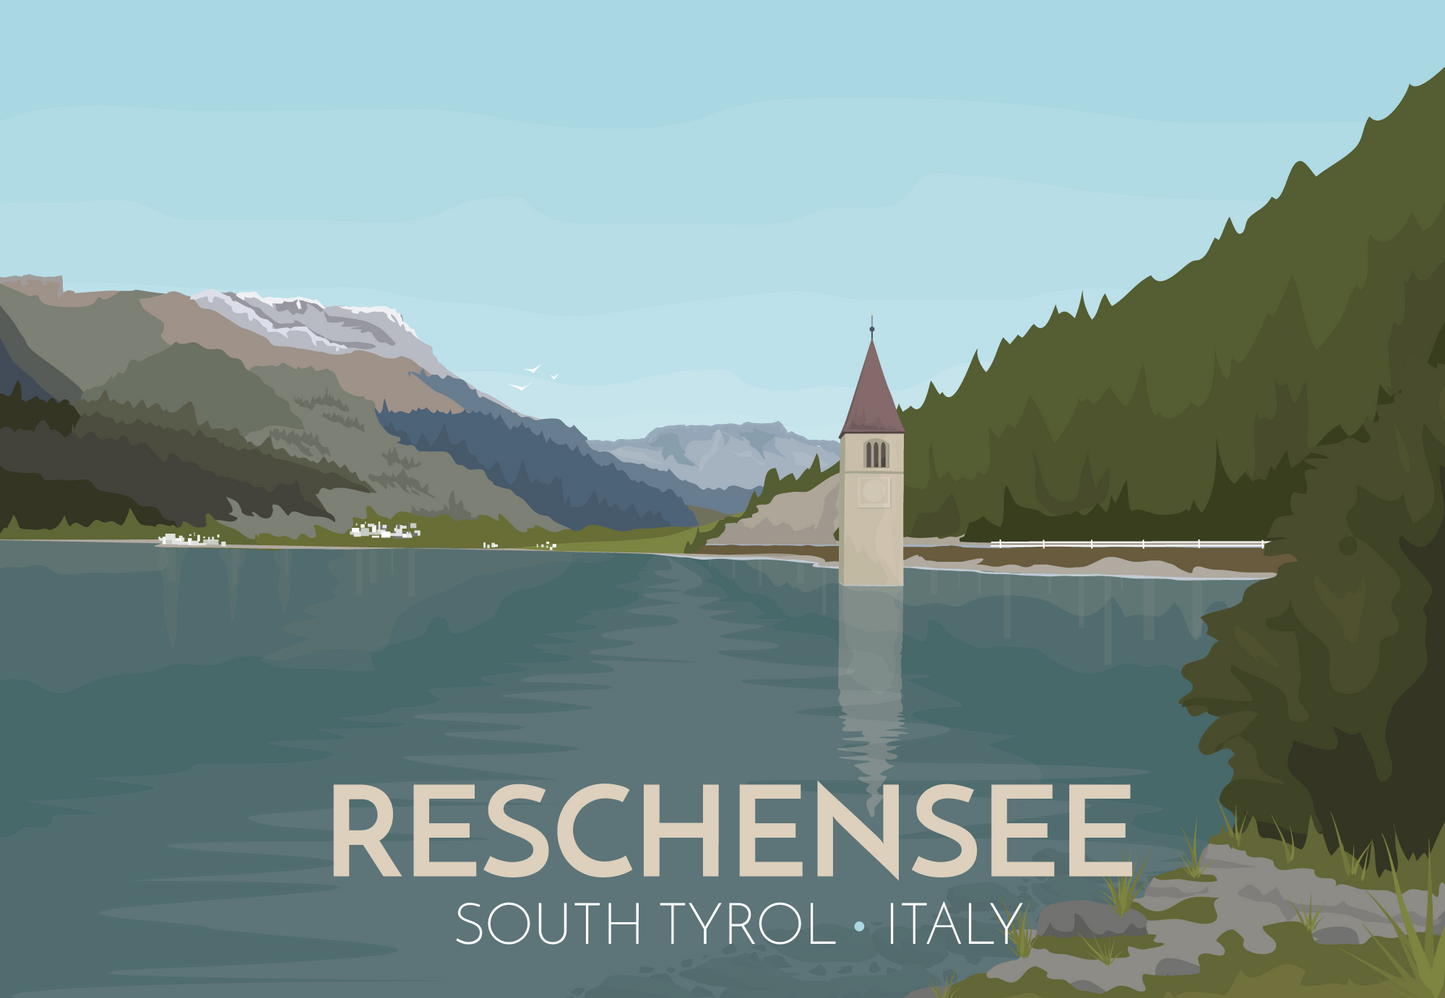 Reschensee Travel Poster